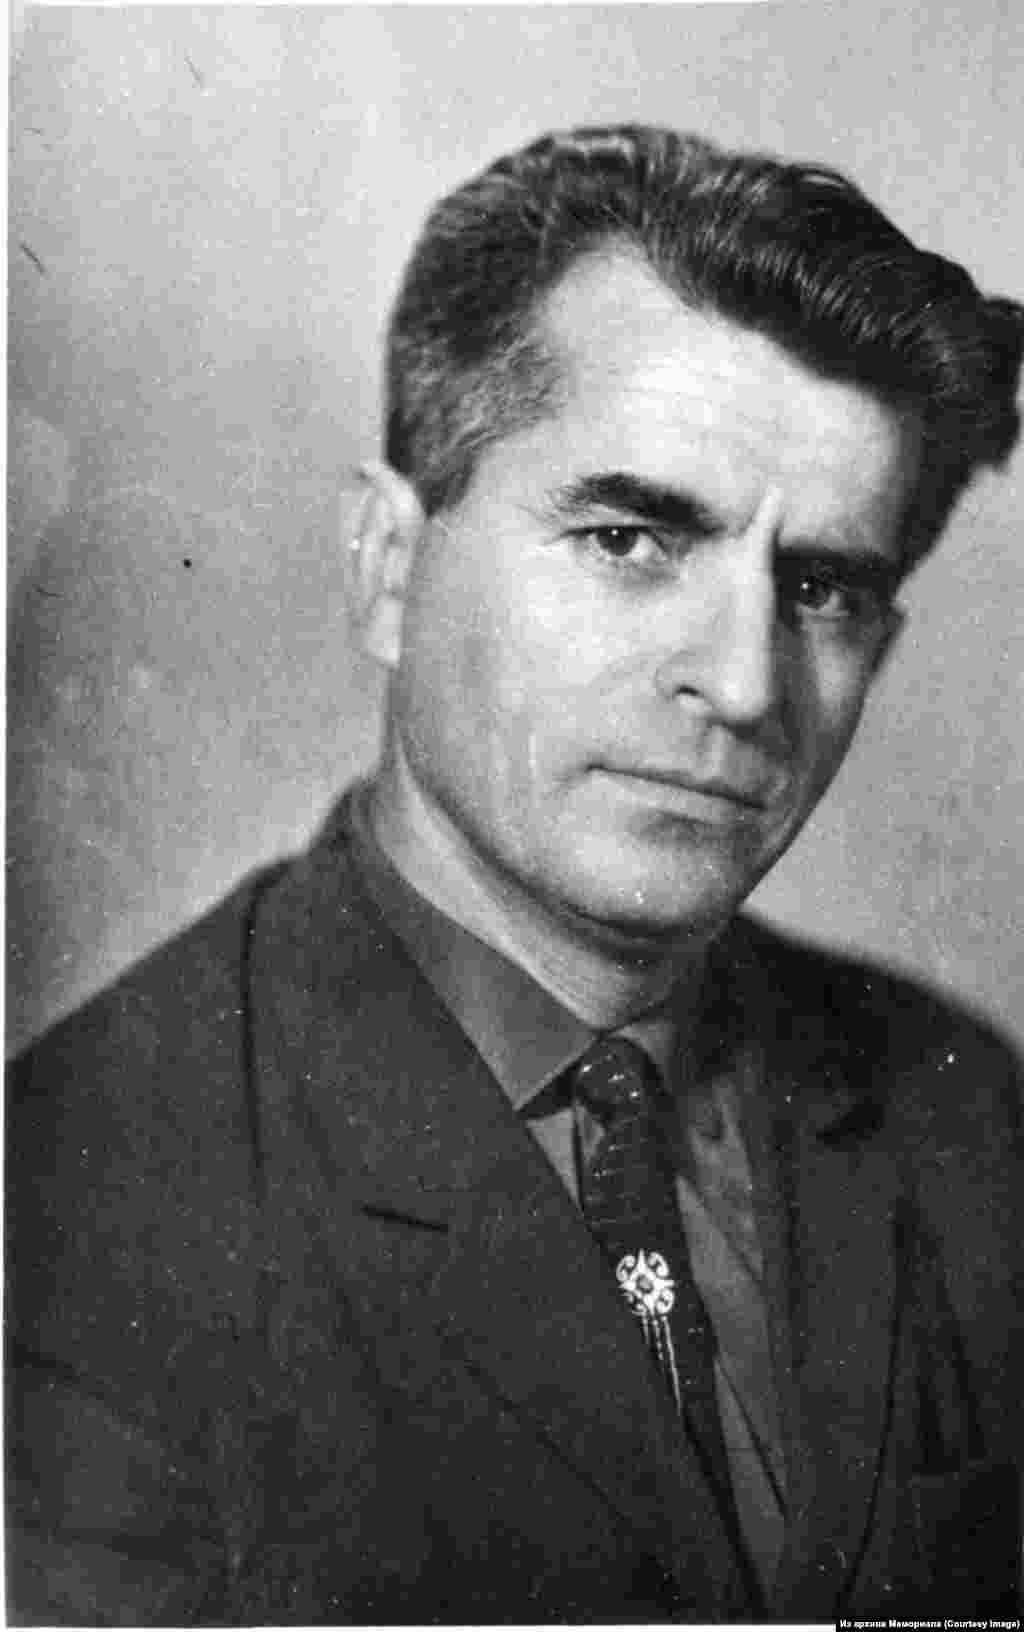 Решат Джемилев (1931-2002) - один из наиболее активных участников крымскотатарского движения. Политзаключенный. Был трижды осужден - сначала в 1967, затем сидел в тюрьме с 1972 по 1975, а потом с 1979 по 1982.